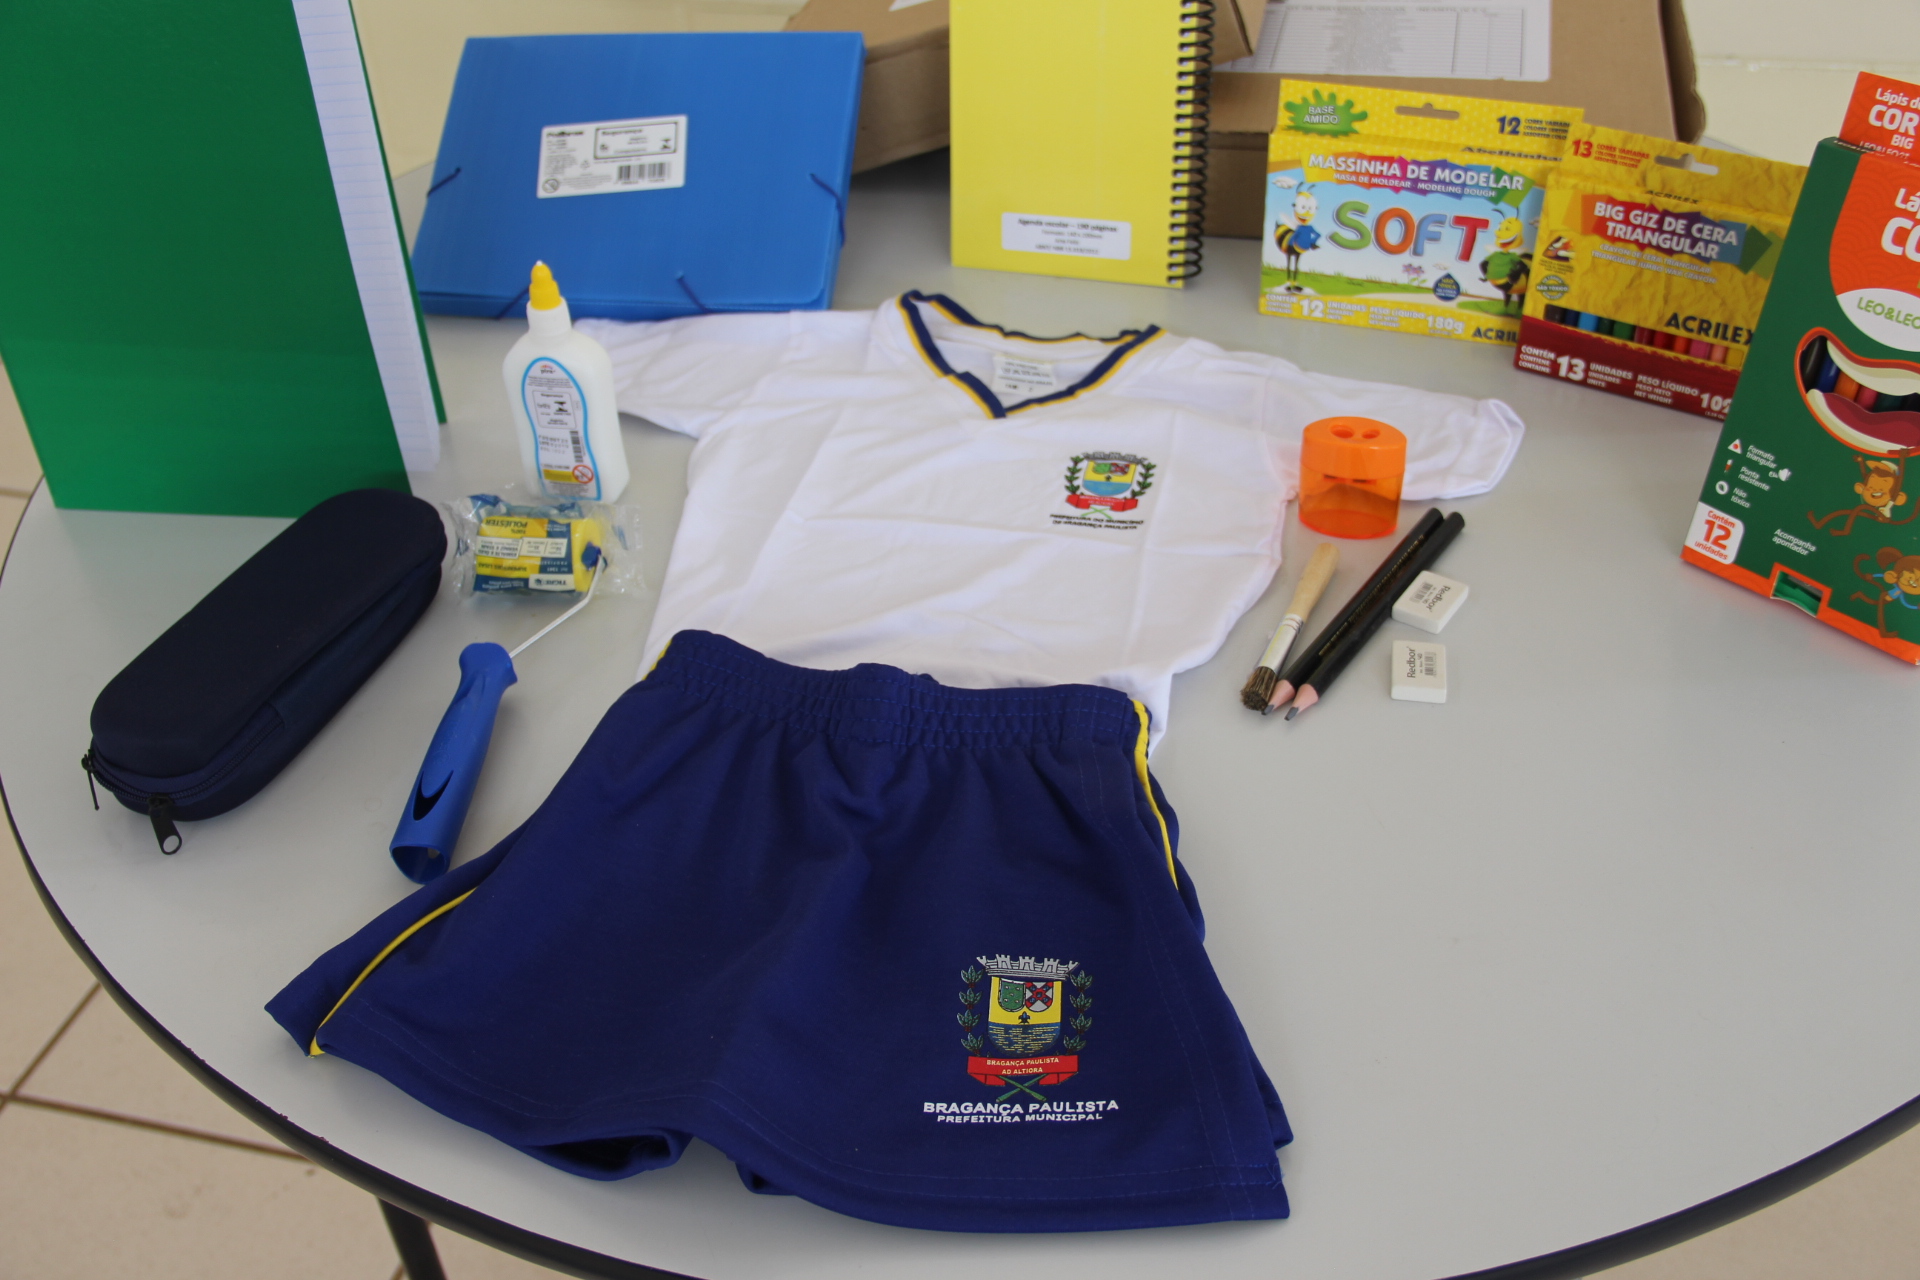 10.02.2021 Com início das aulas Prefeitura distribuis os kits escolares e uniformes de verão (1)